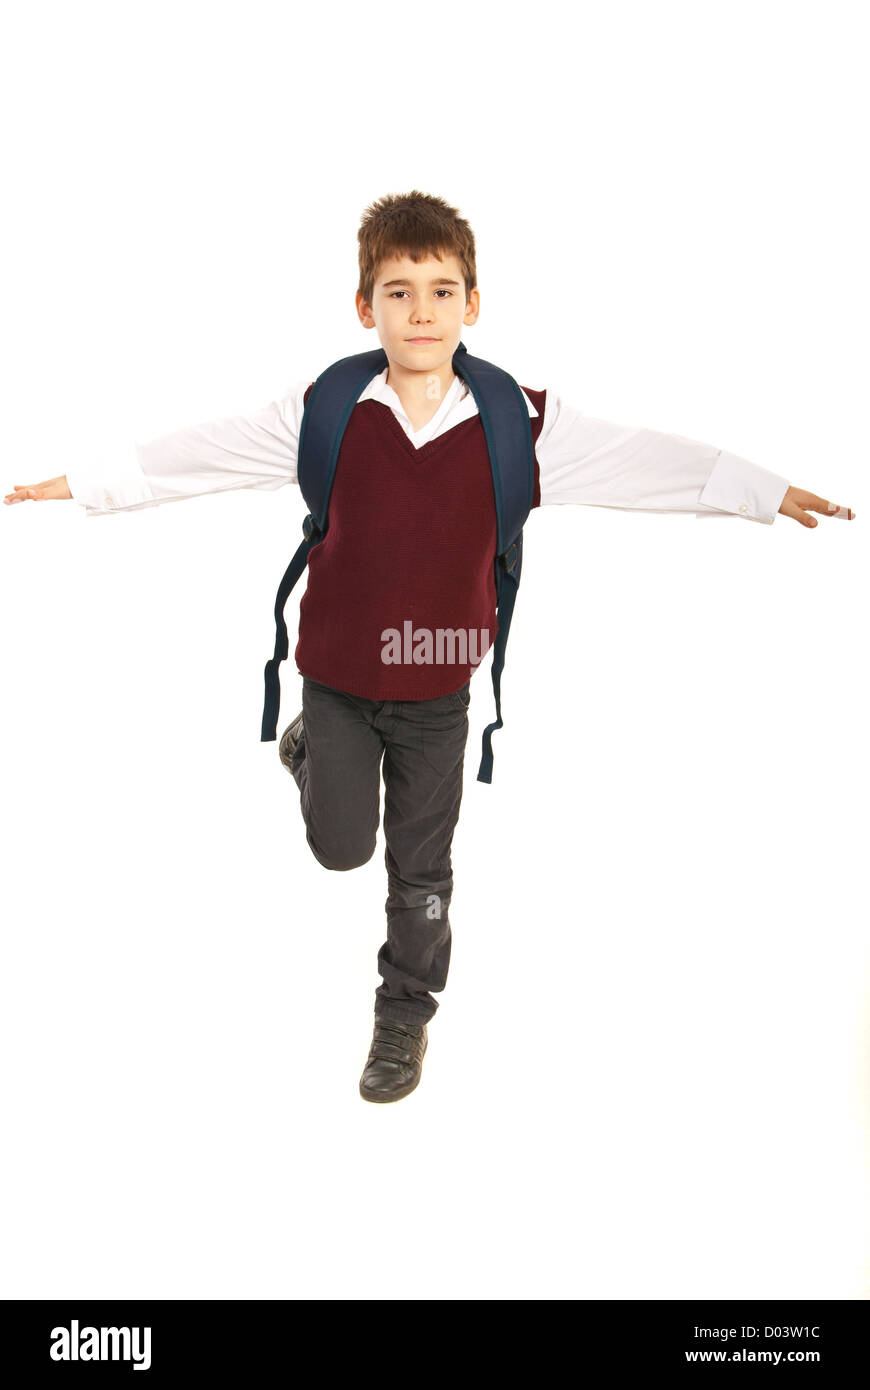 Garçon étudiant en essayant de garder l'équilibre et debout dans une jambe avec mains tendues isolé sur fond blanc Banque D'Images